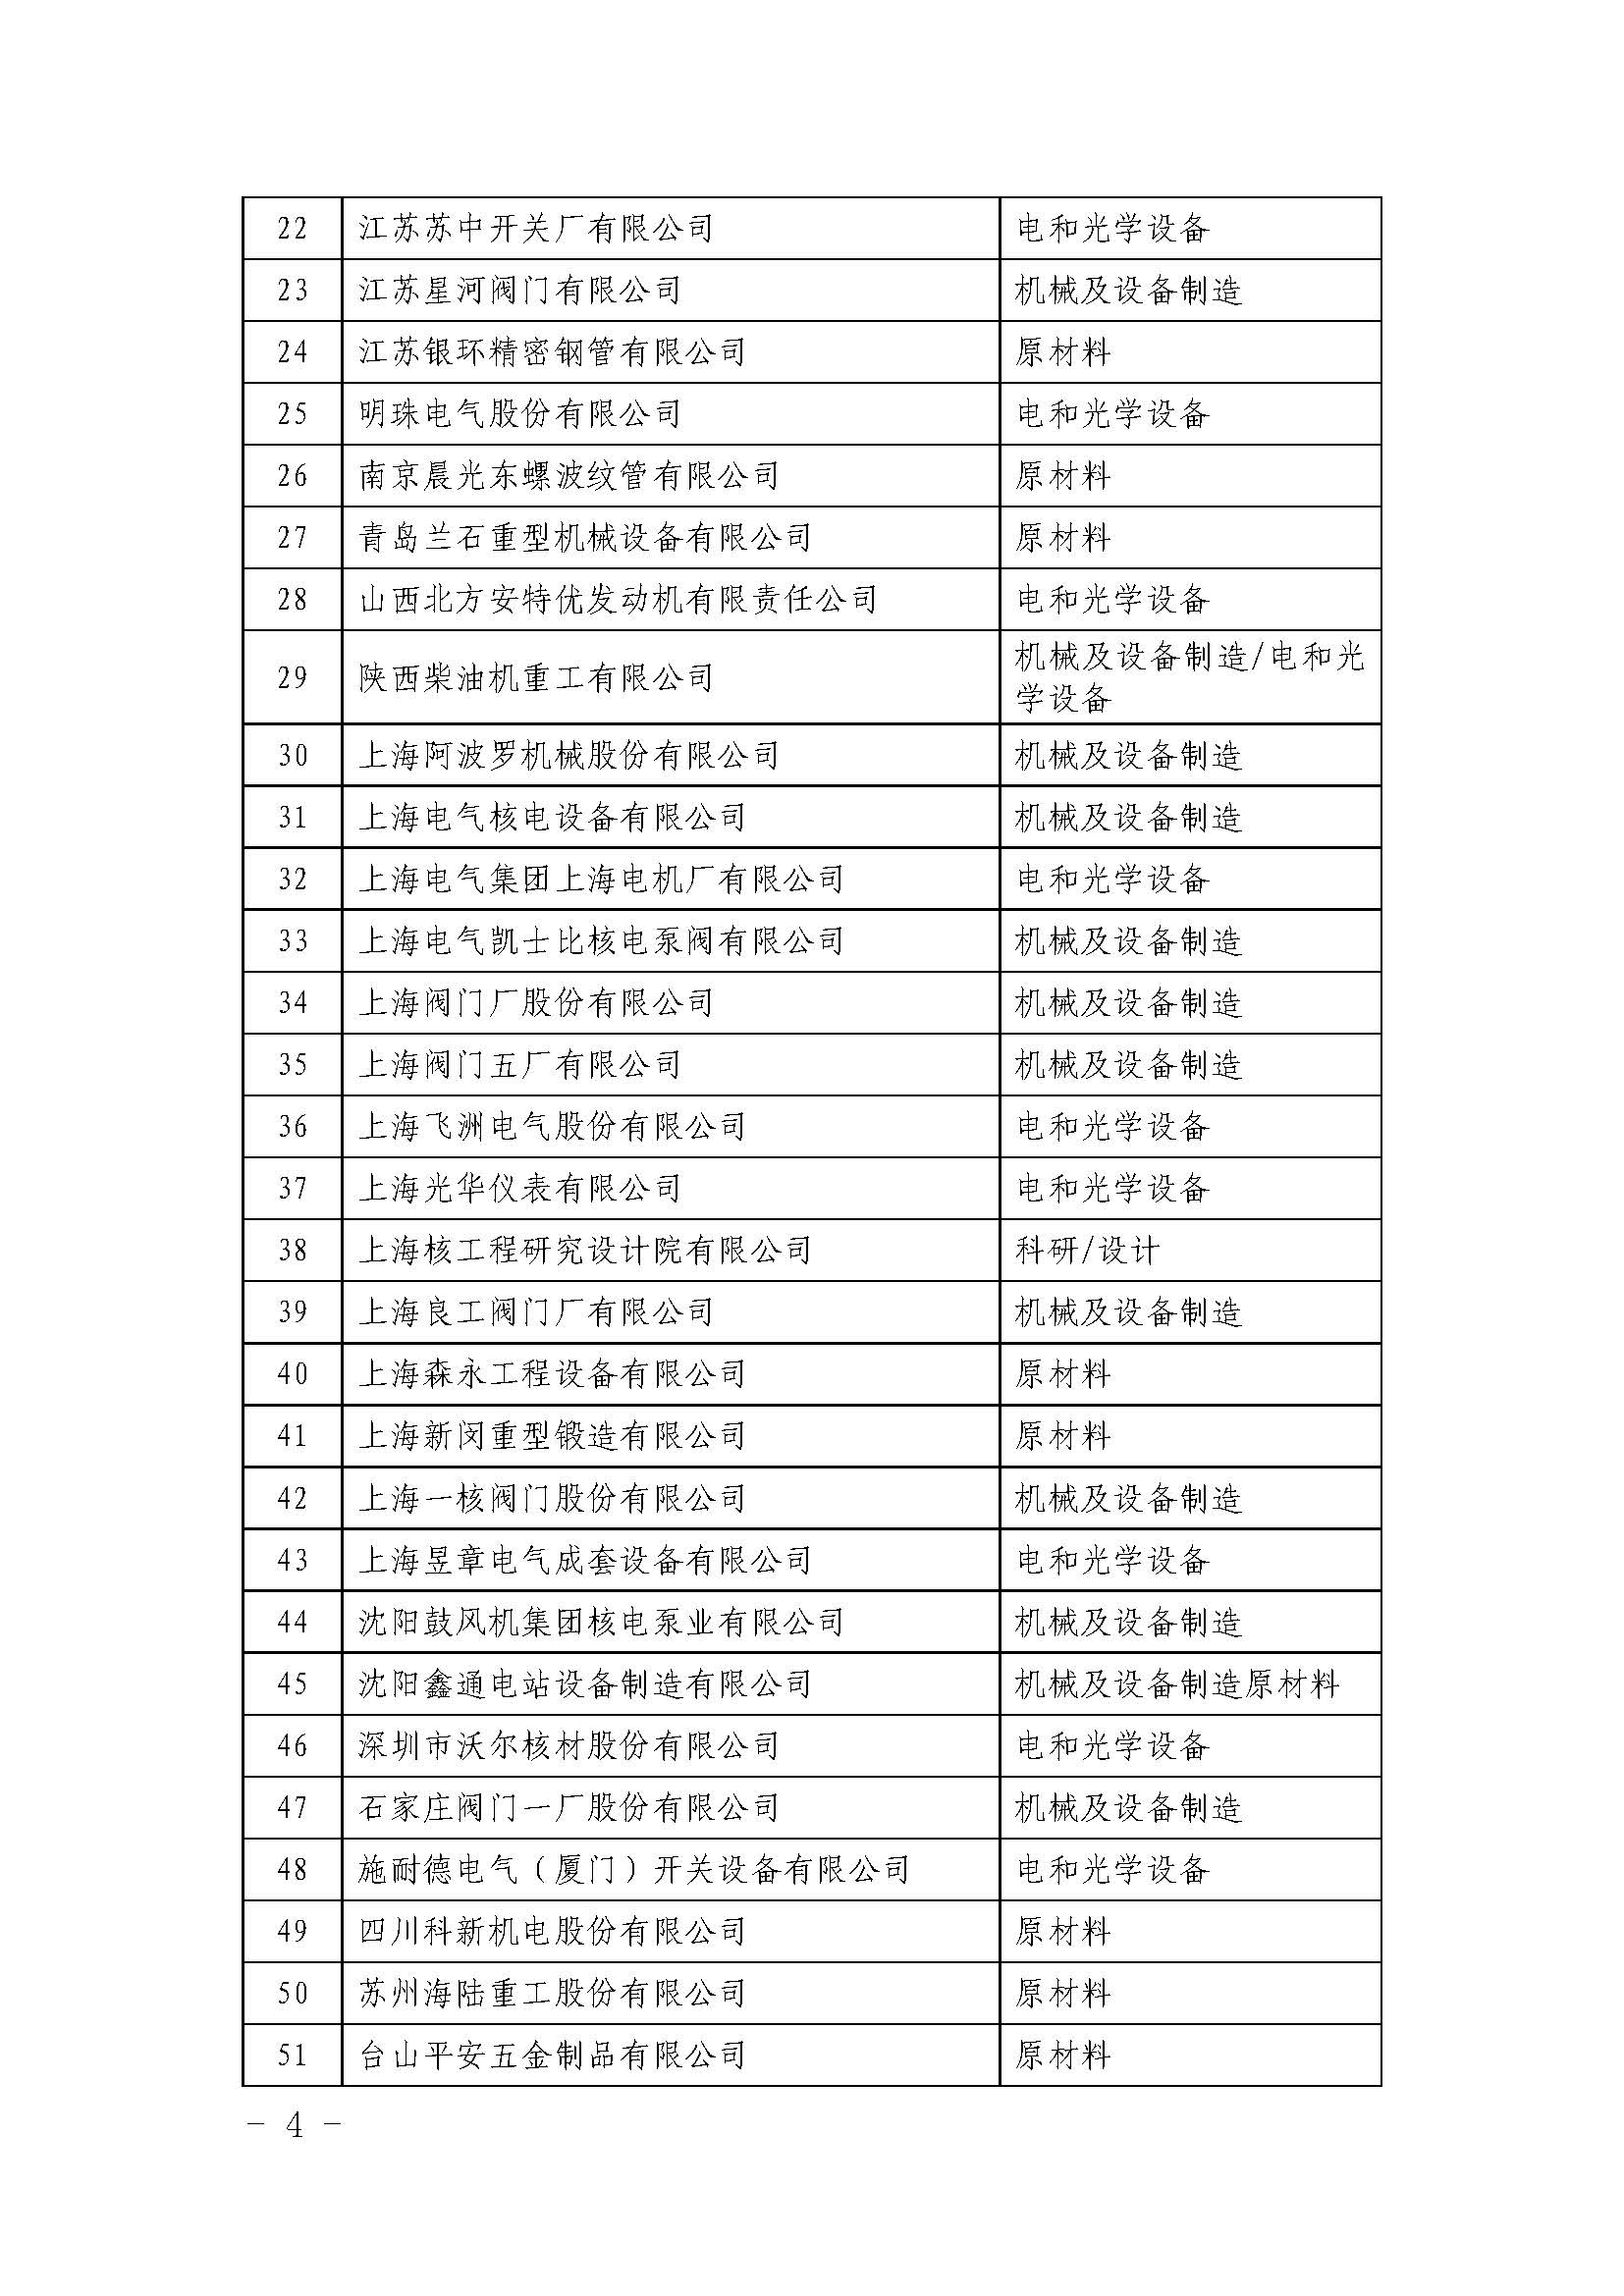 关于发布中国核能行业协会首批核能行业合格供应商名录的公告_页面_4.jpg